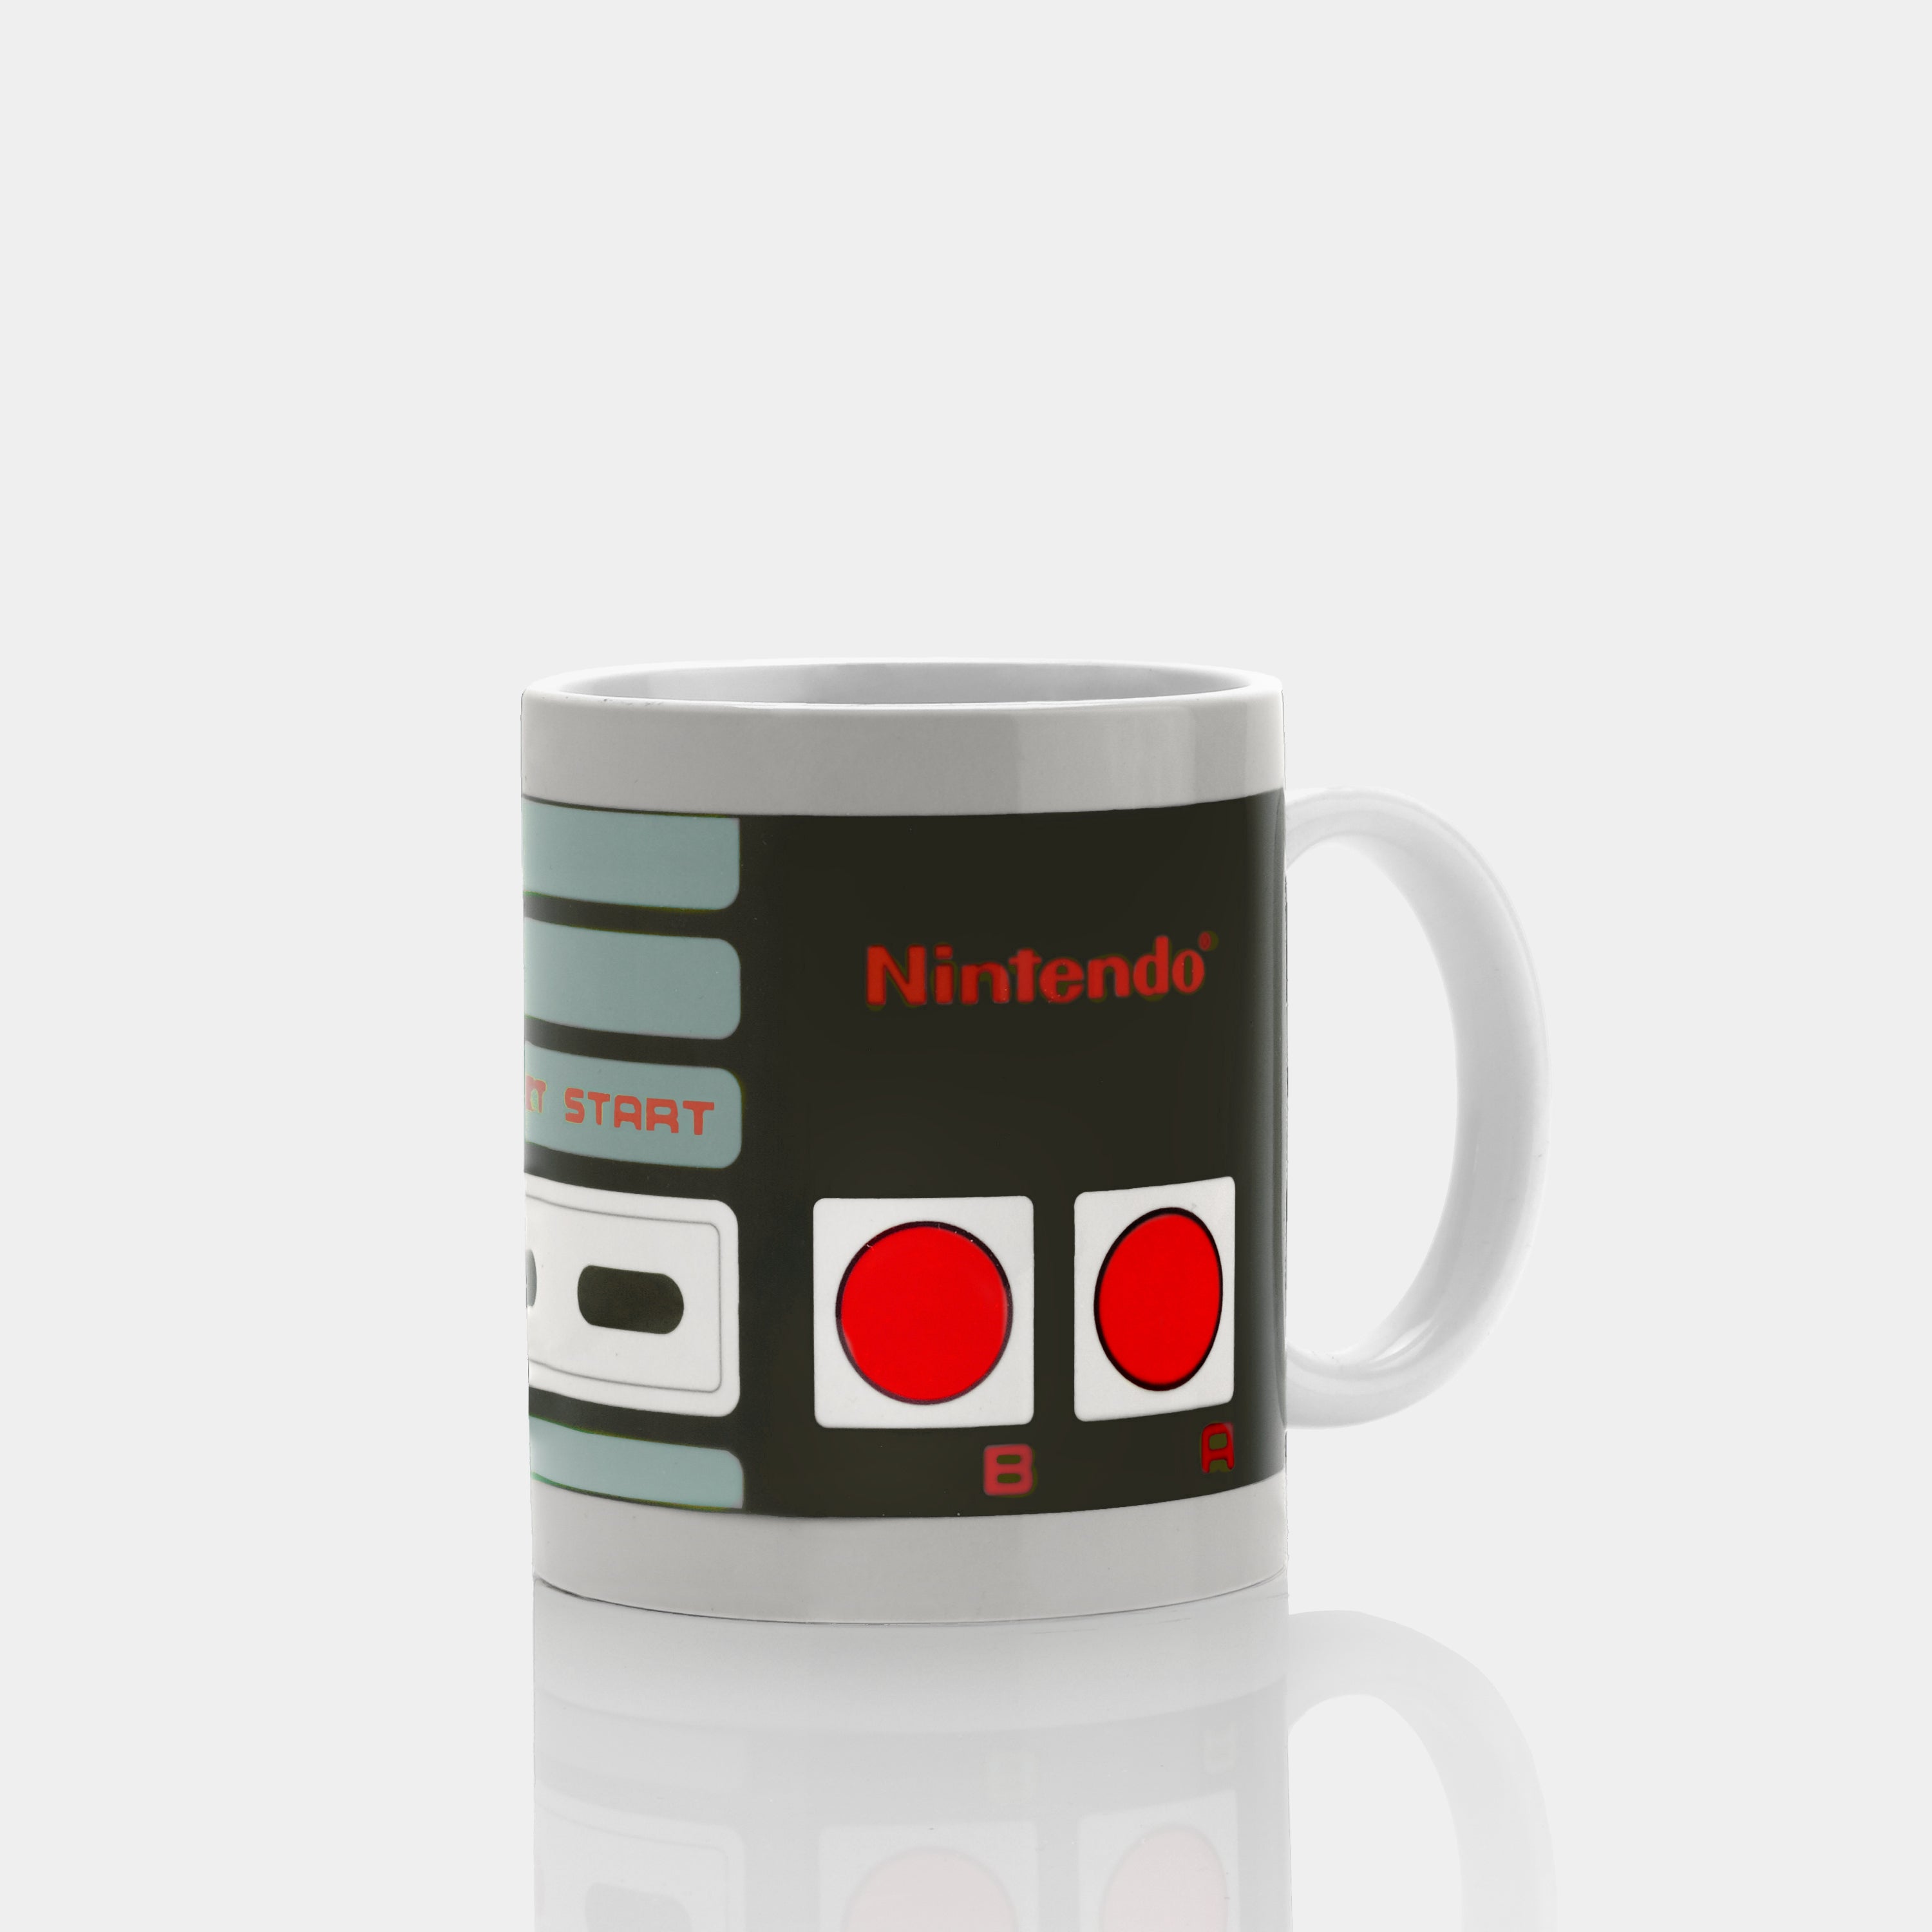 Nintendo NES Controller Ceramic Mug